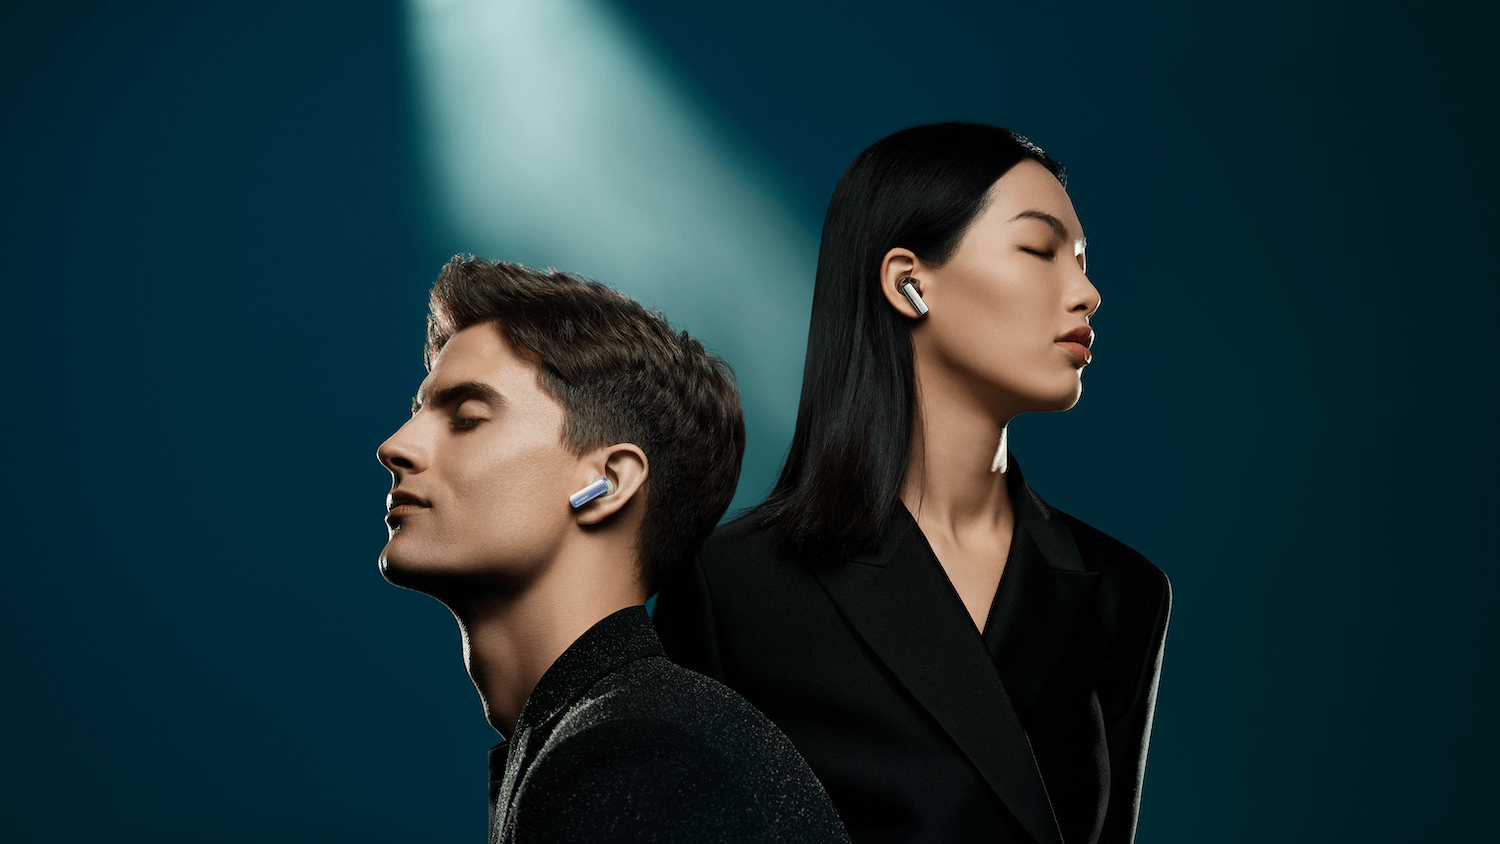 Huawei Freebuds Pro 2 true wireless earbuds